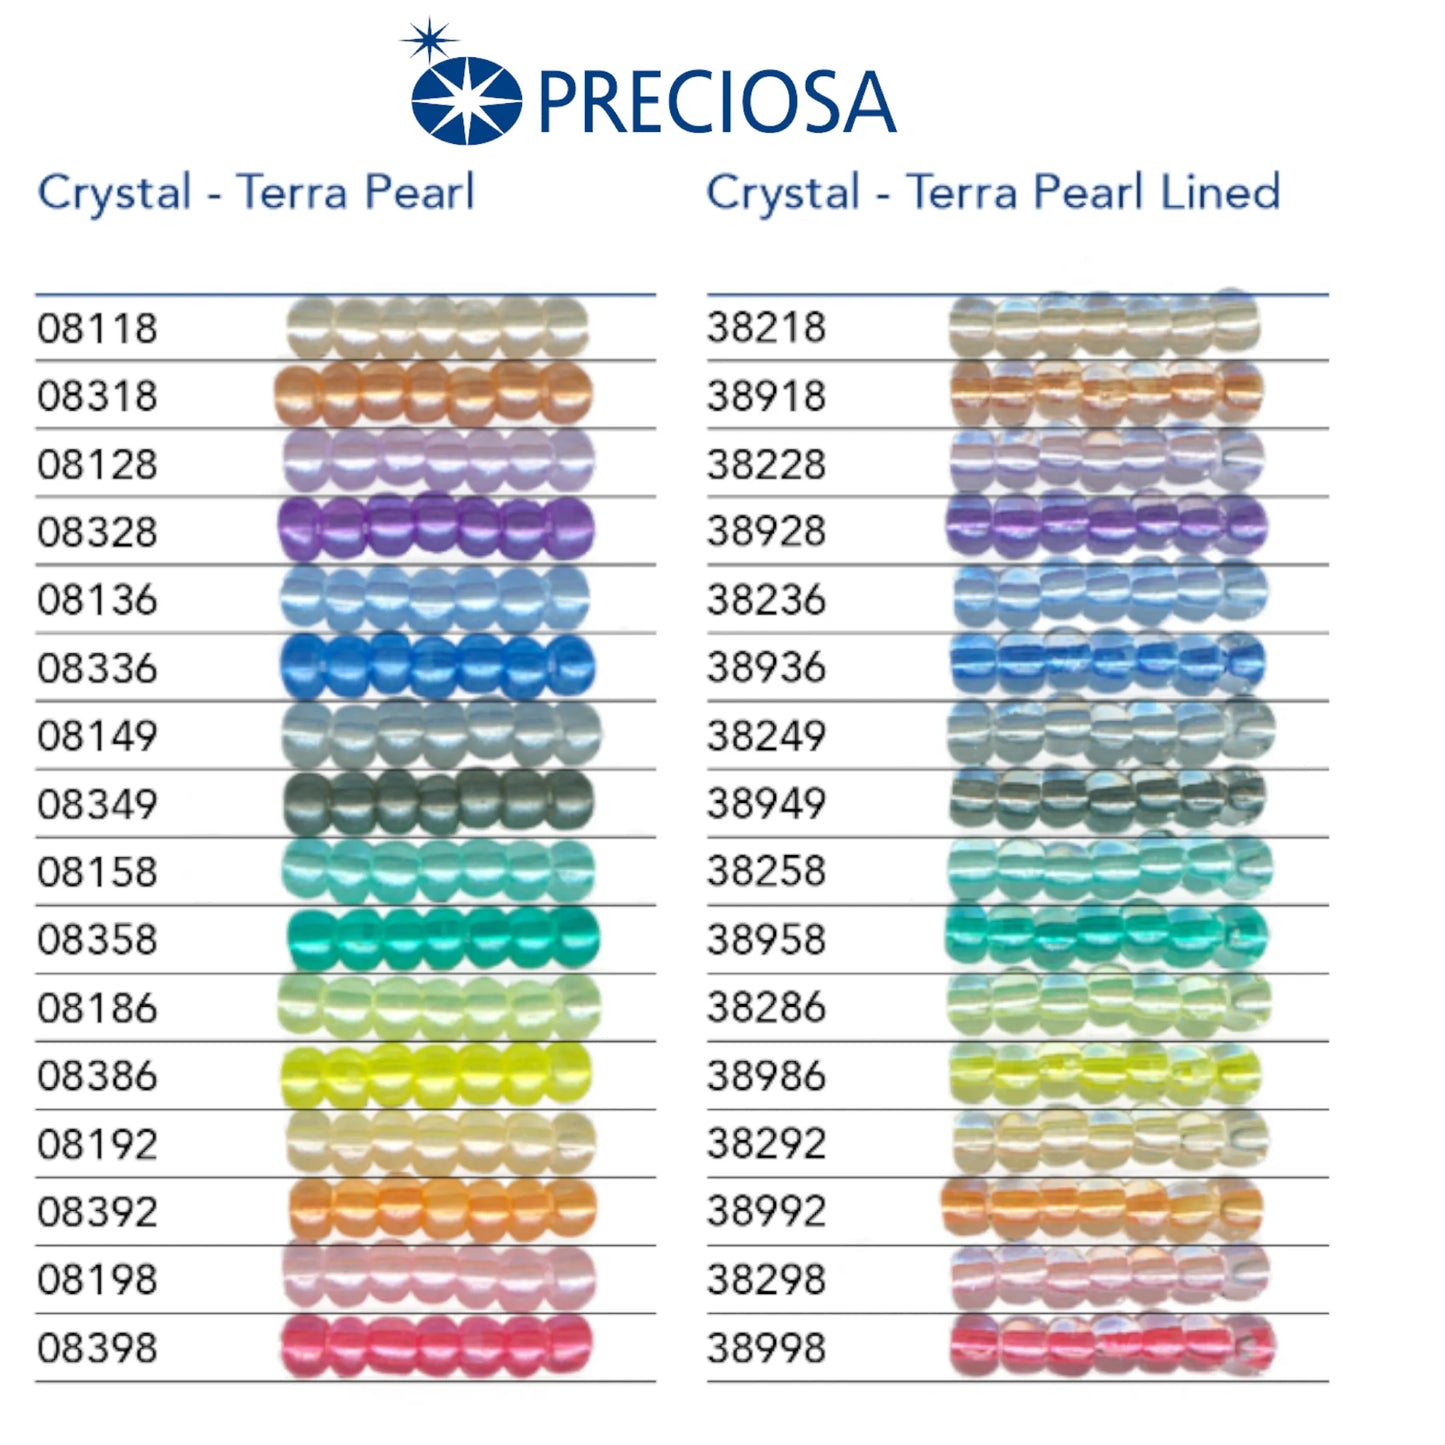 38958 Rocailles tchèques PRECIOSA Rocailles 10/0 turquoise. Cristal – Terra Pearl doublé.